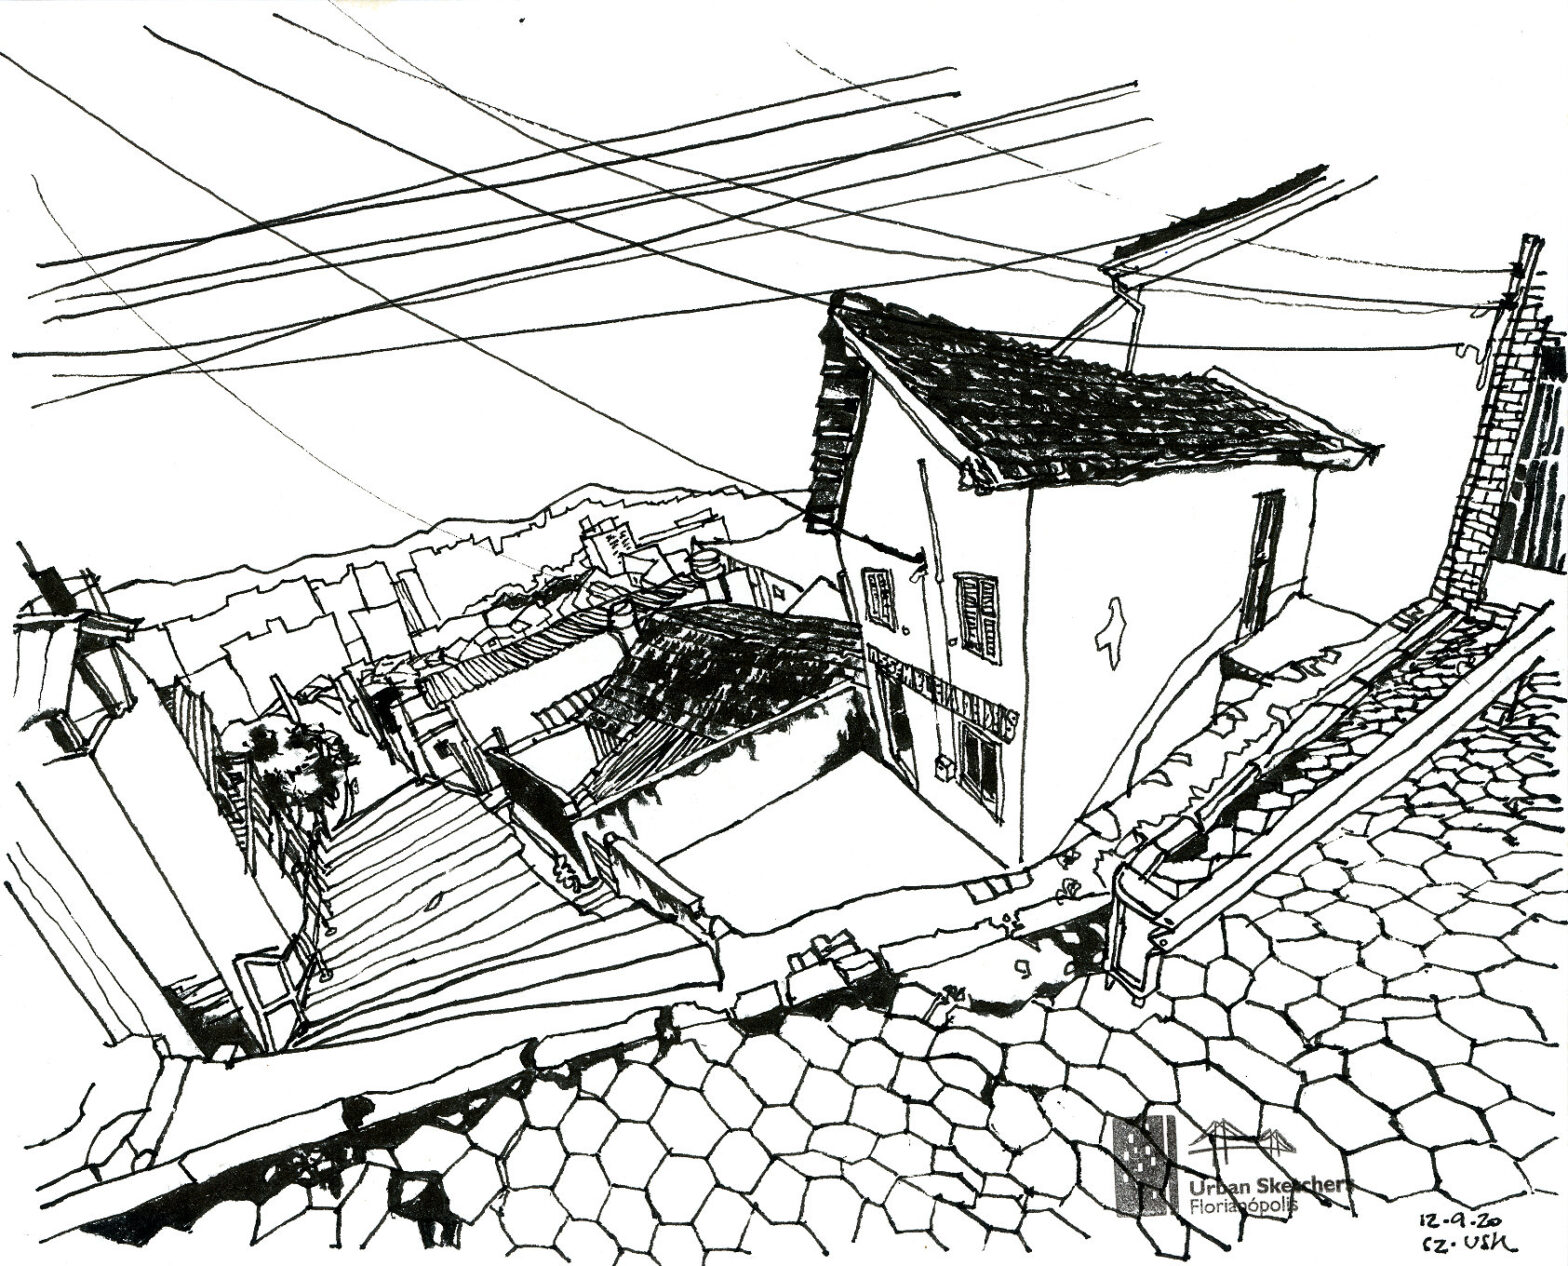 Desenhando (virtualmente) no Morro da Mariquinha